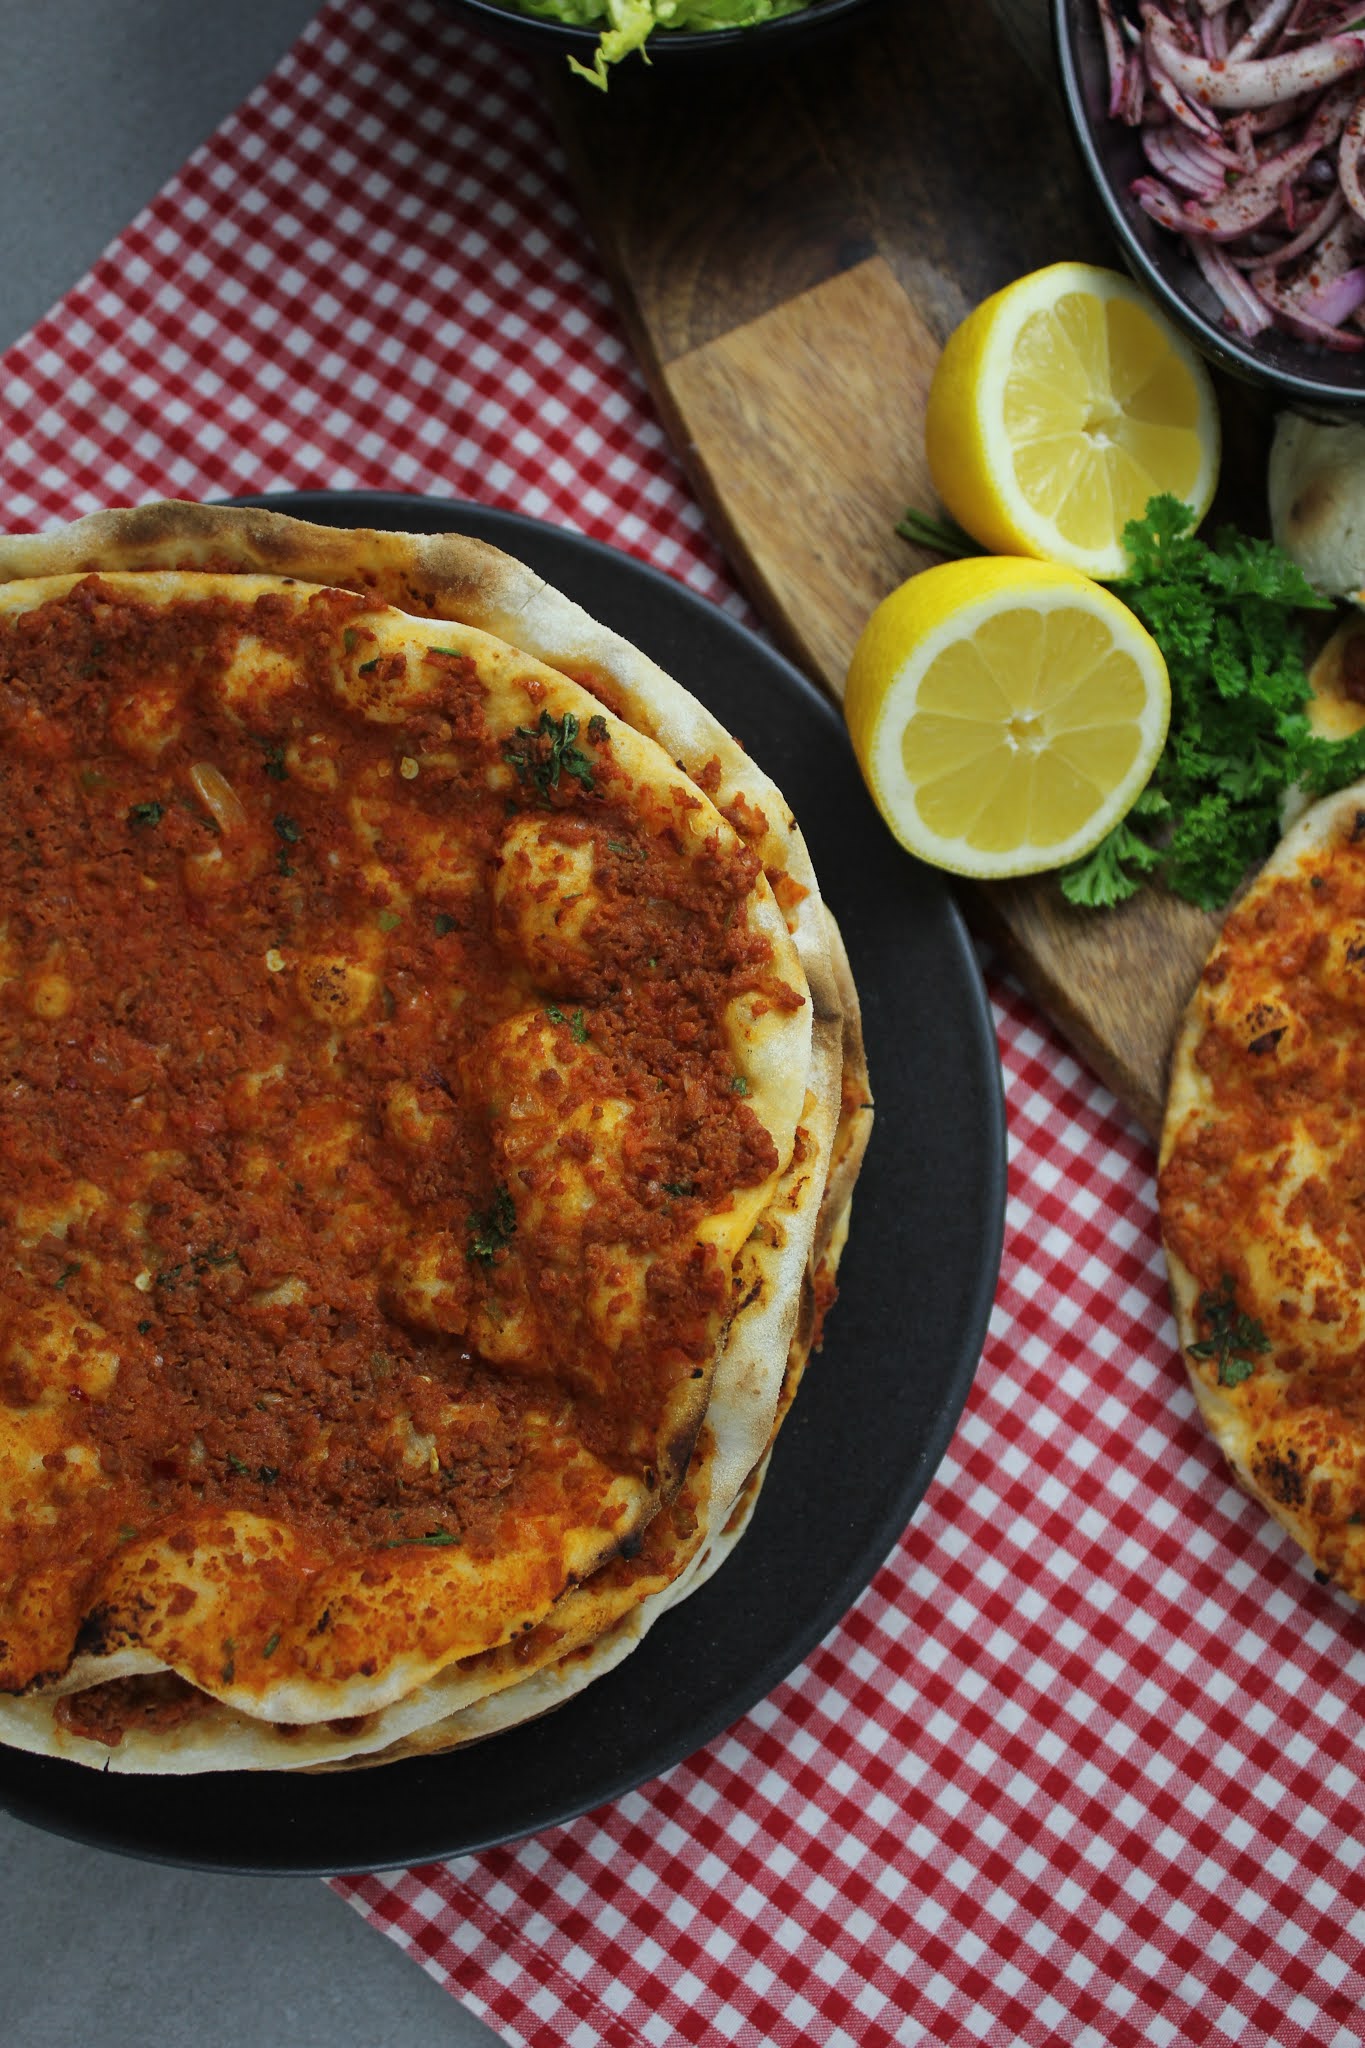 Lahmacun - Türkische Pizza